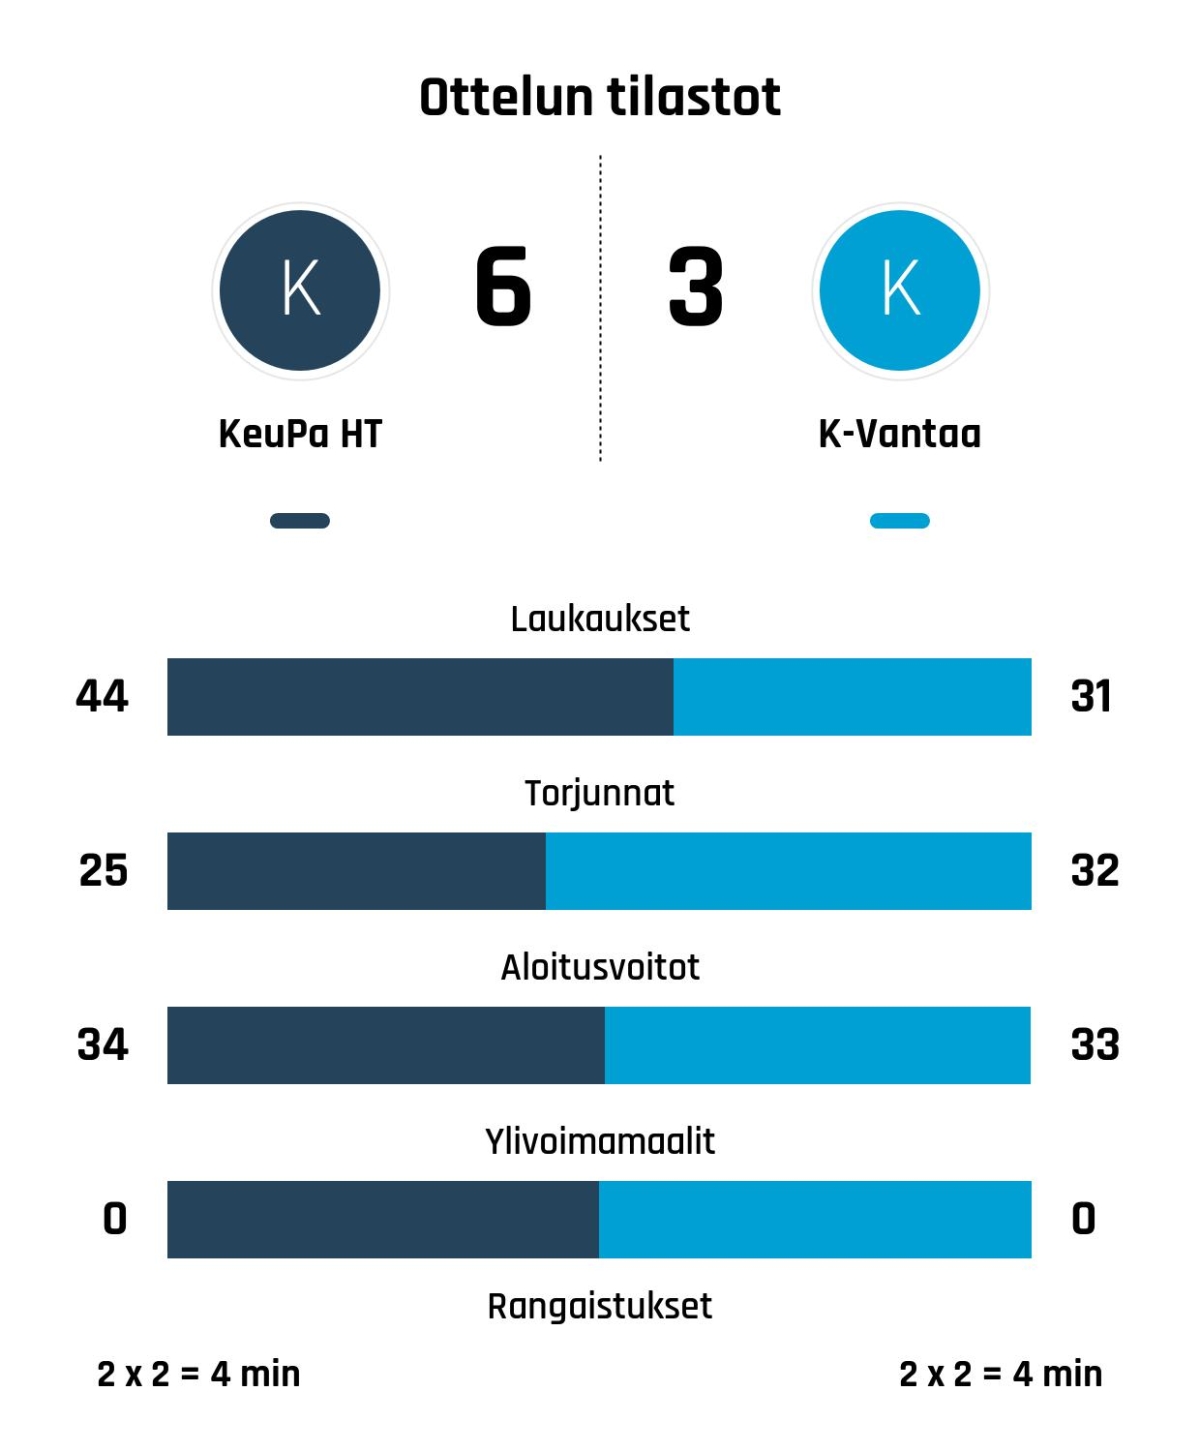 KeuPa HT nousi rinnalle ja ohi – K-Vantaa kaatui 6-3